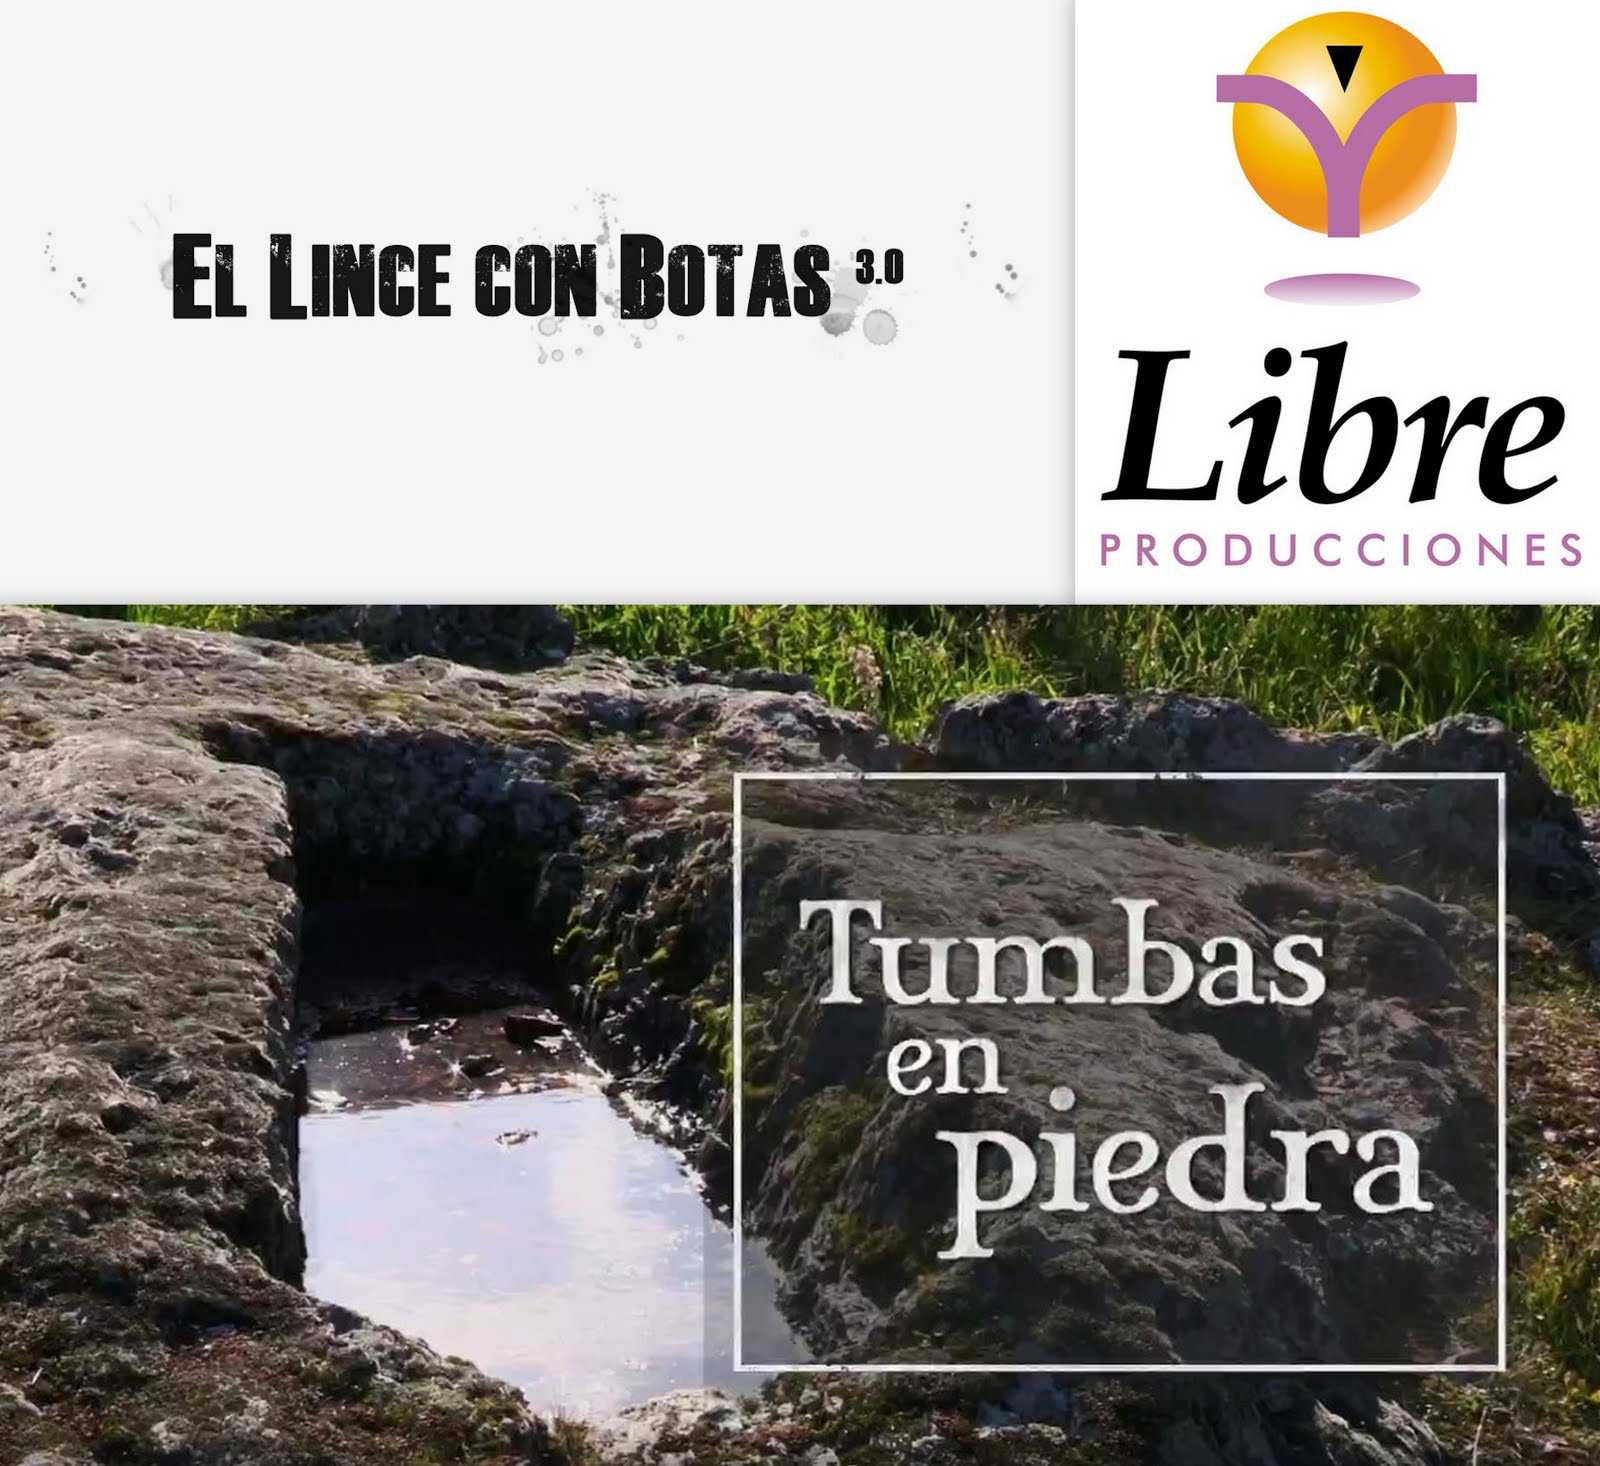 El lince con botas 3.0: Tumbas en piedra (Arroyo de la Luz y Aliseda)